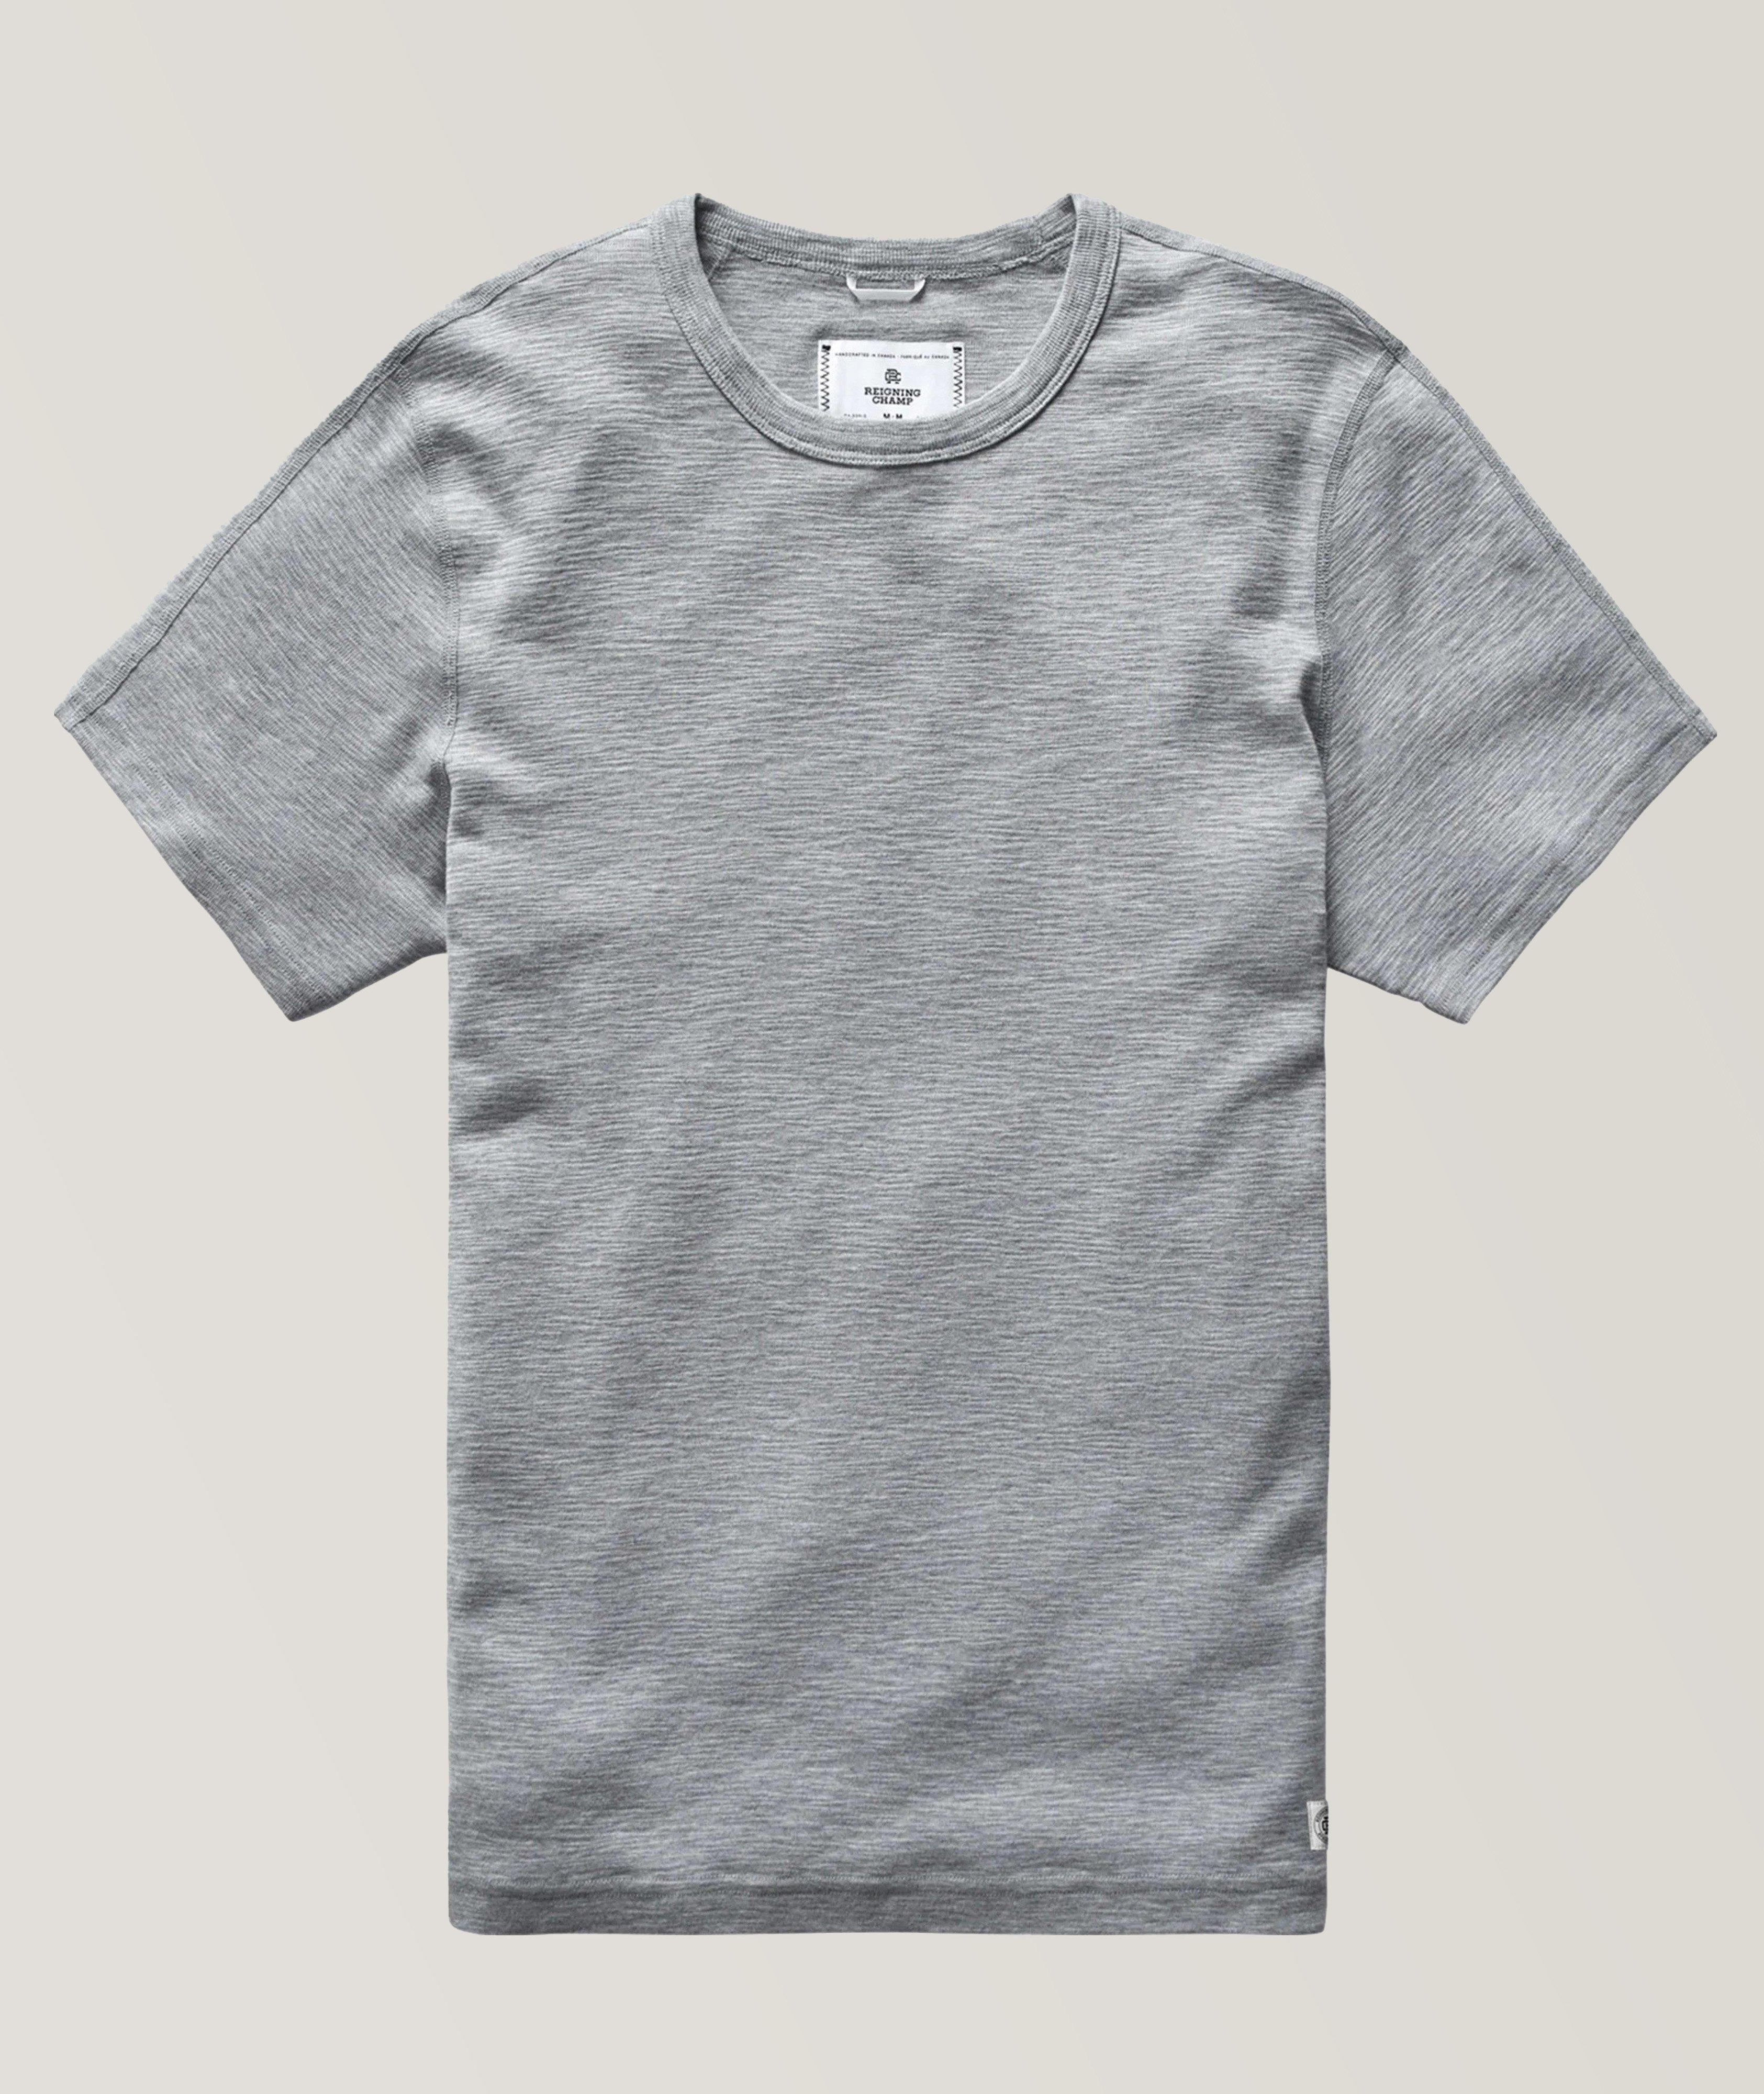 T-shirt en coton irrégulier image 0